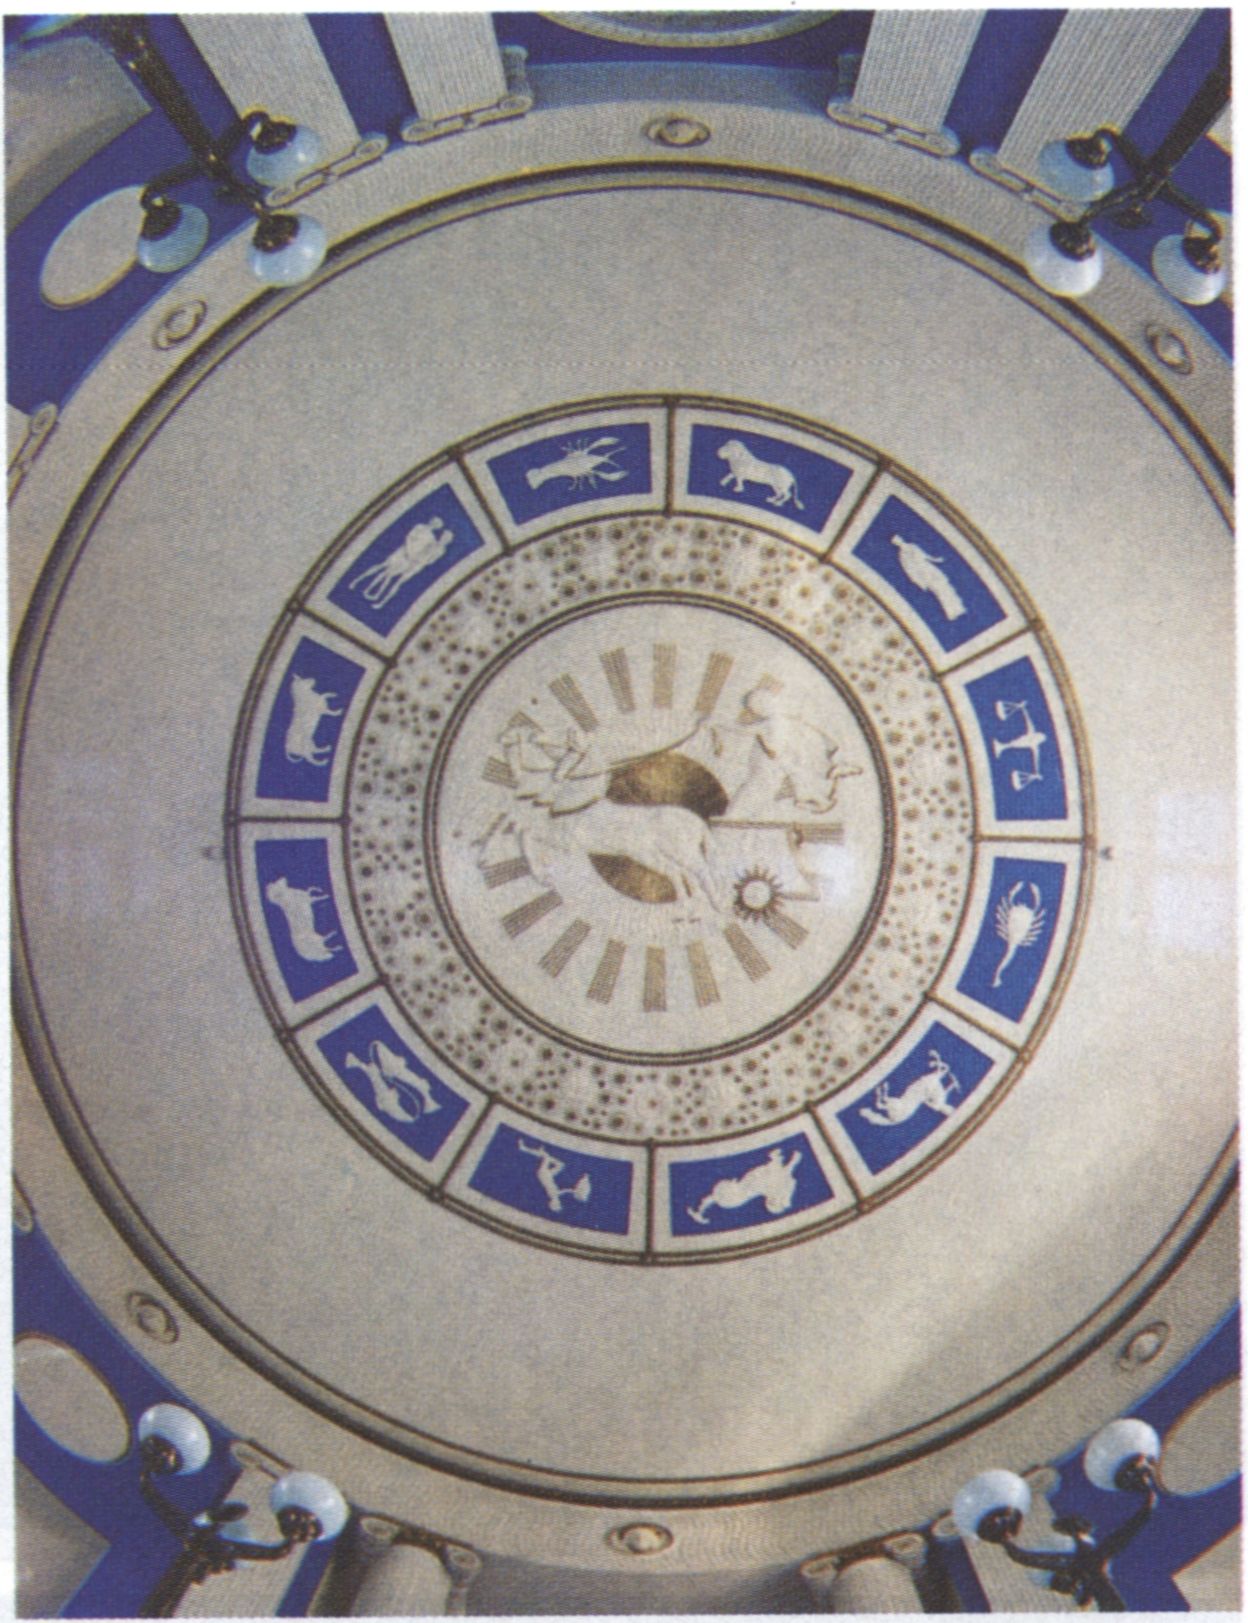 Банк. Интерьер холла. Плафон-тондо — изображение квадриги, управляемой Аполлоном. Зодиакальный пояс. Публикуется впервые